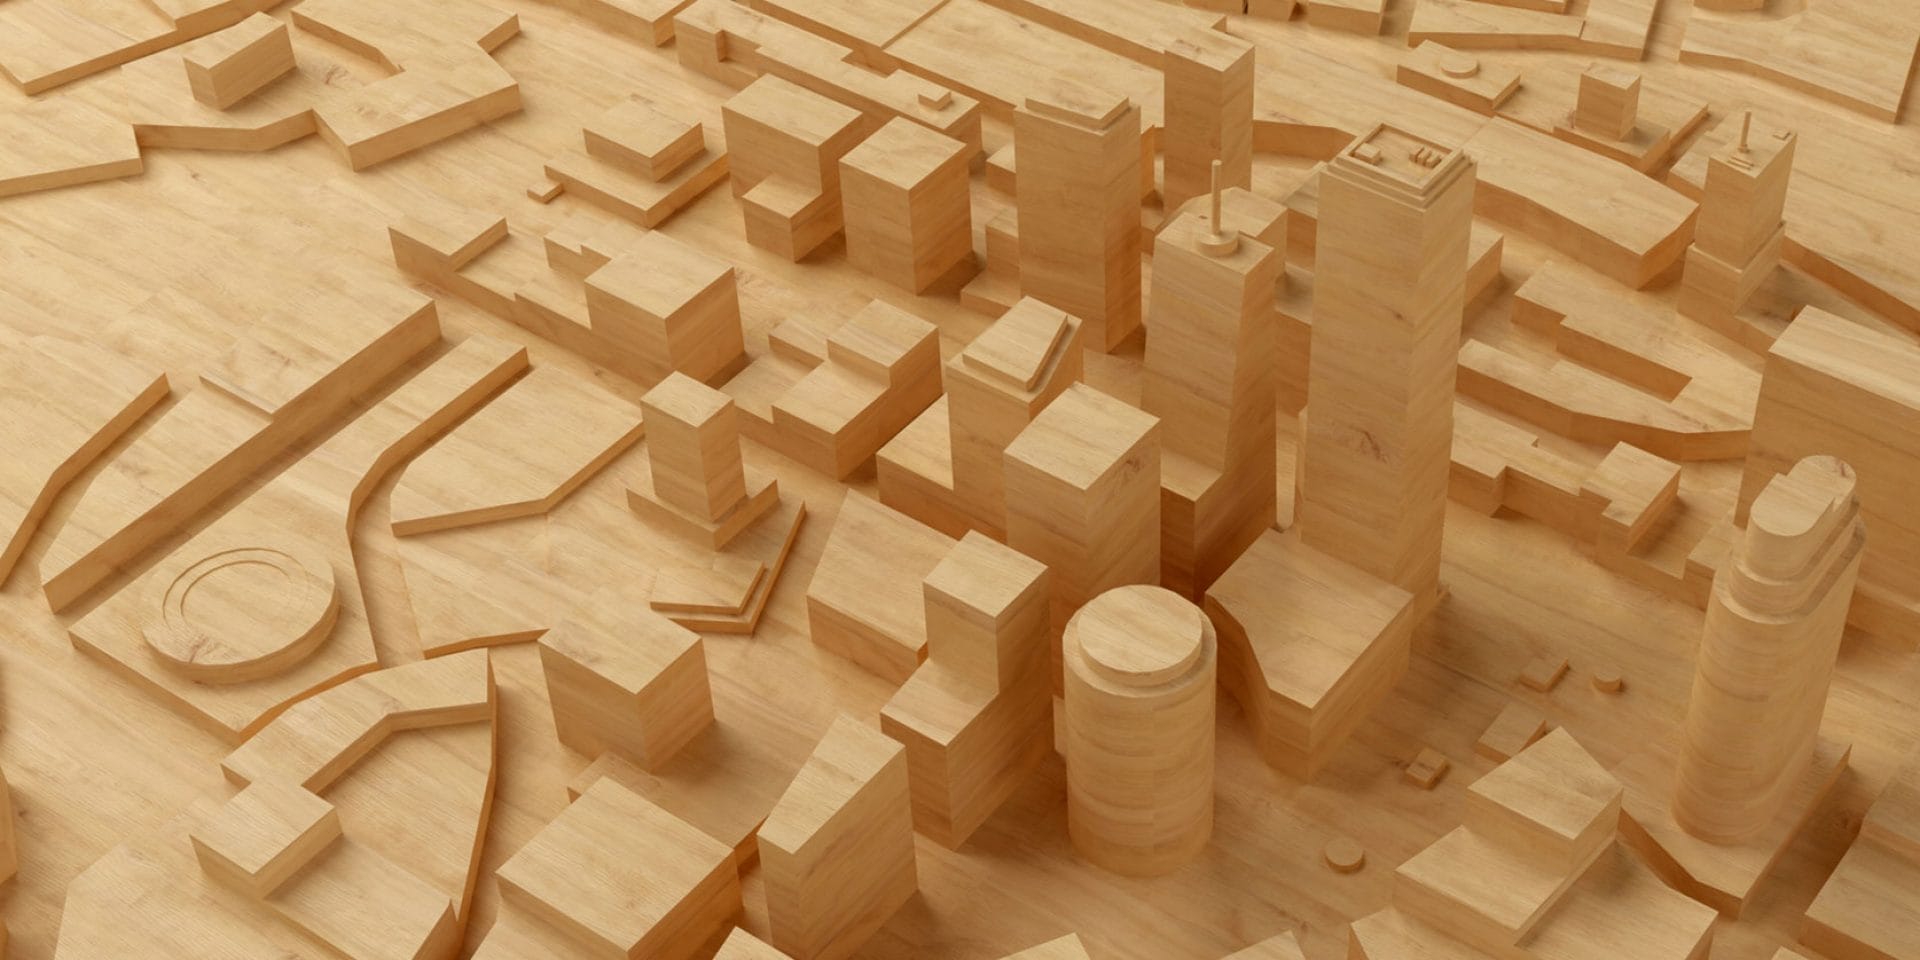 Drewniany model miasta